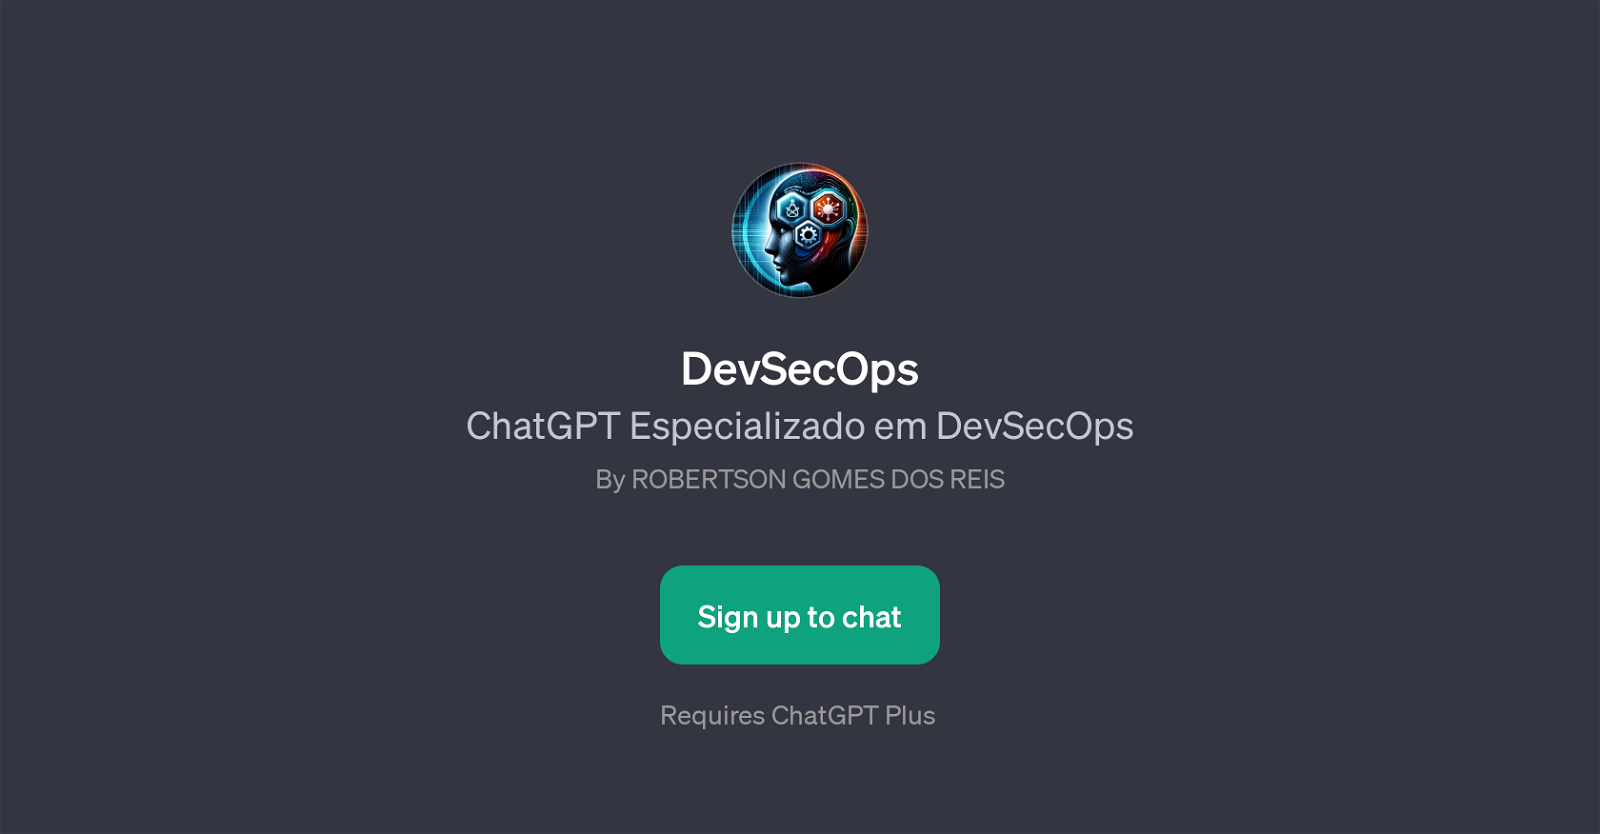 DevSecOpsChatGPT website